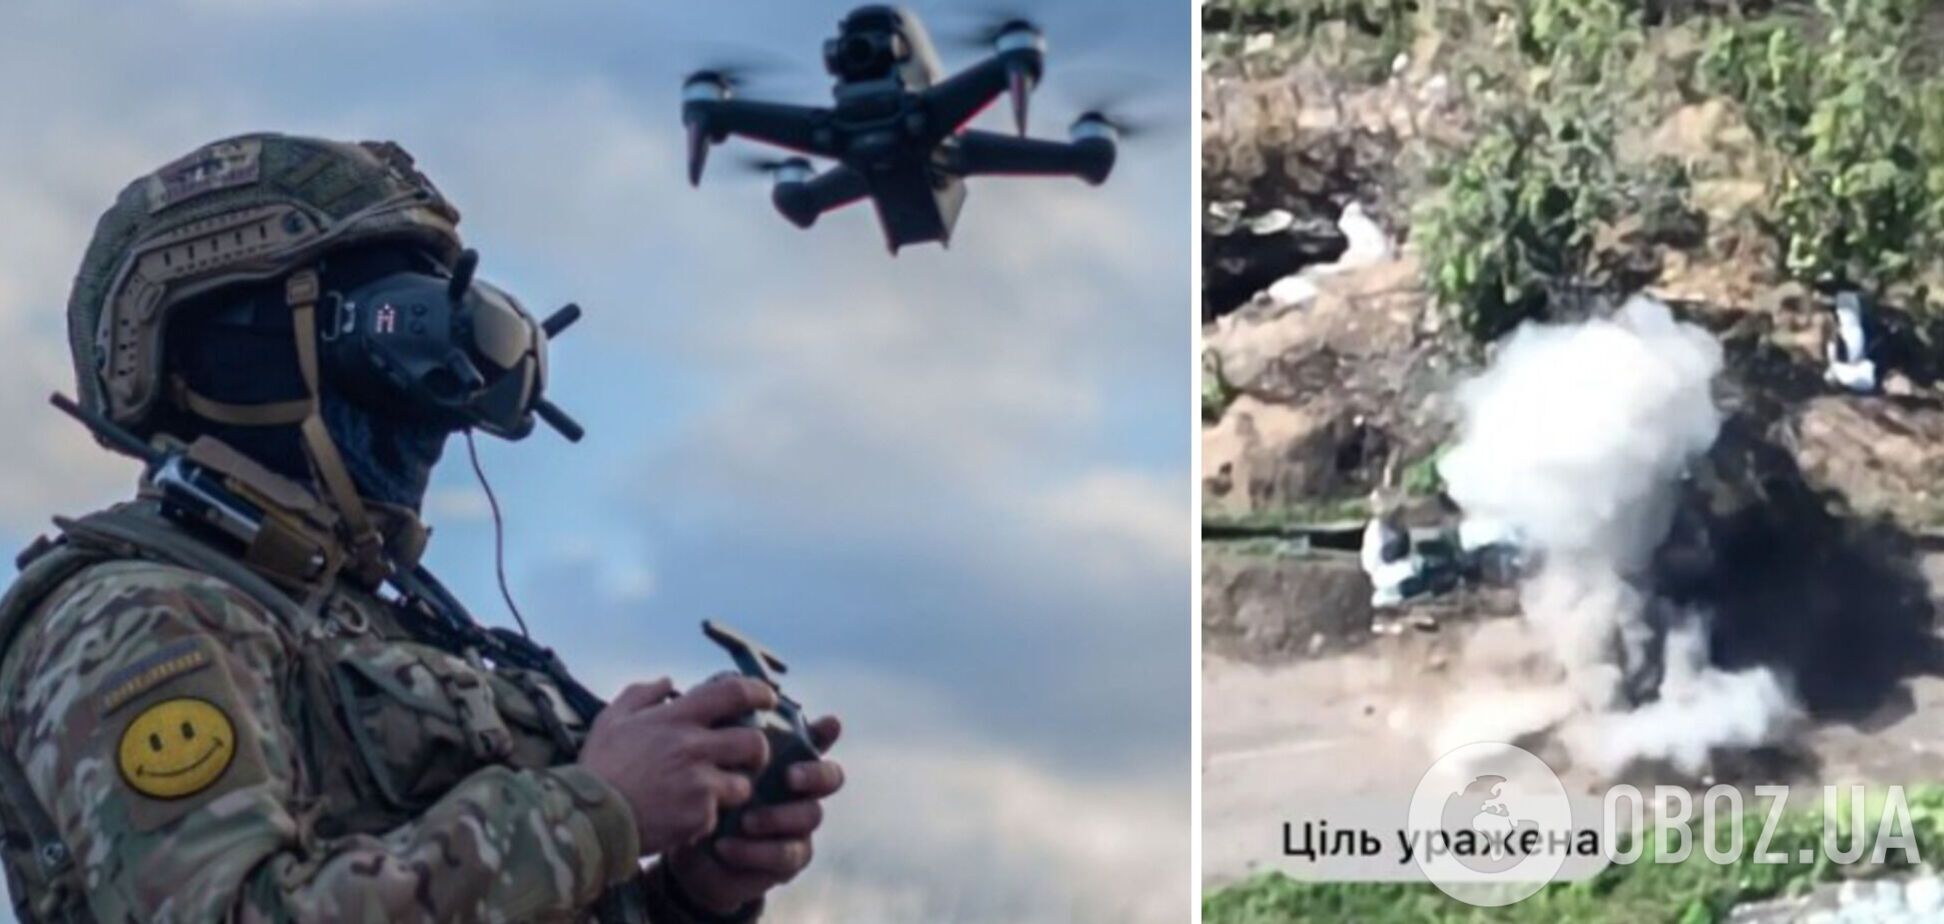 Точно в цель: Донецкая ТрО показала, как уничтожает врага с помощью FPV-дронов. Видео